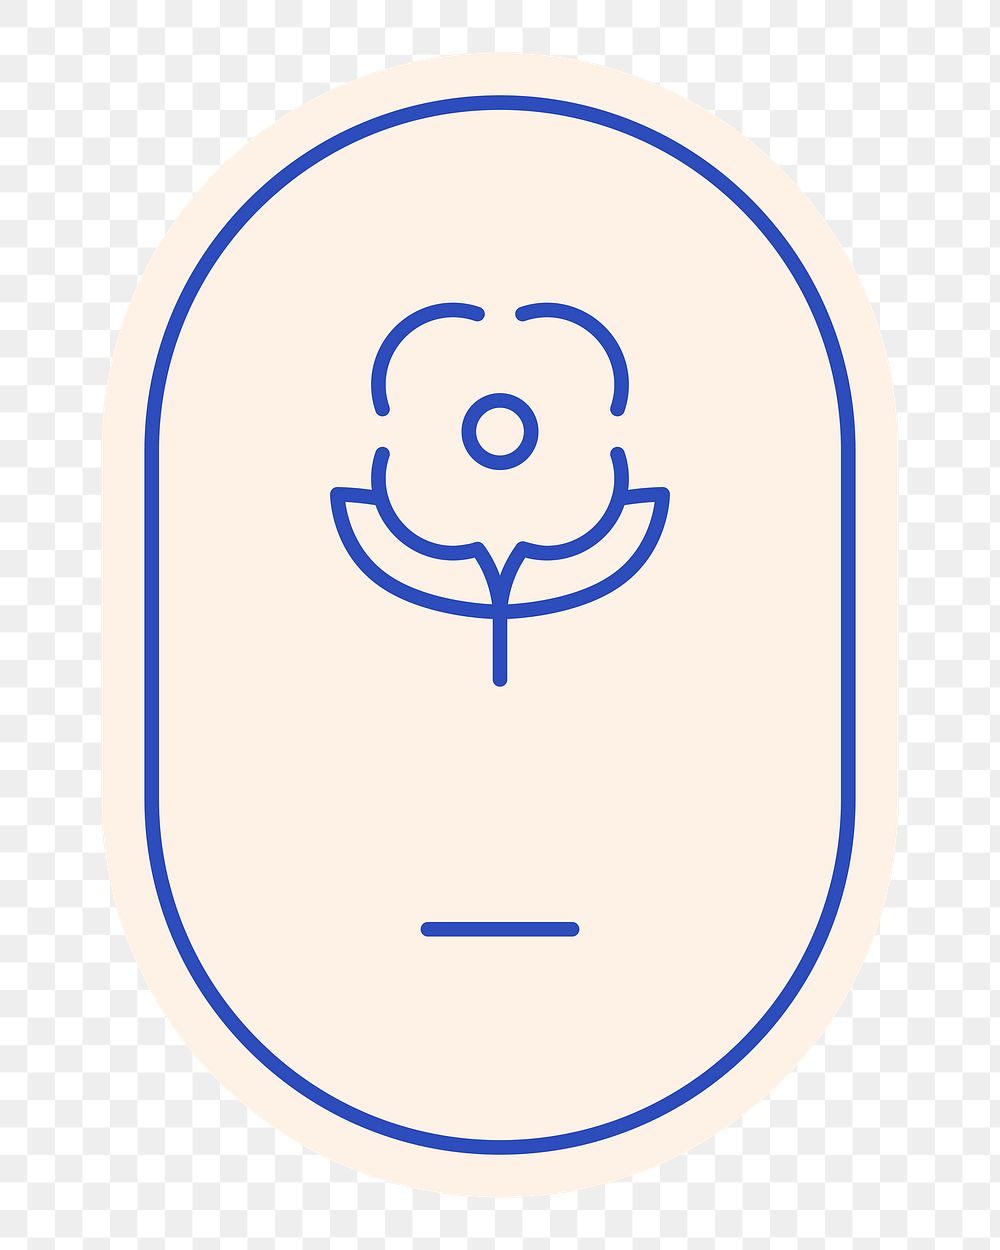 Flower badge png element, transparent background